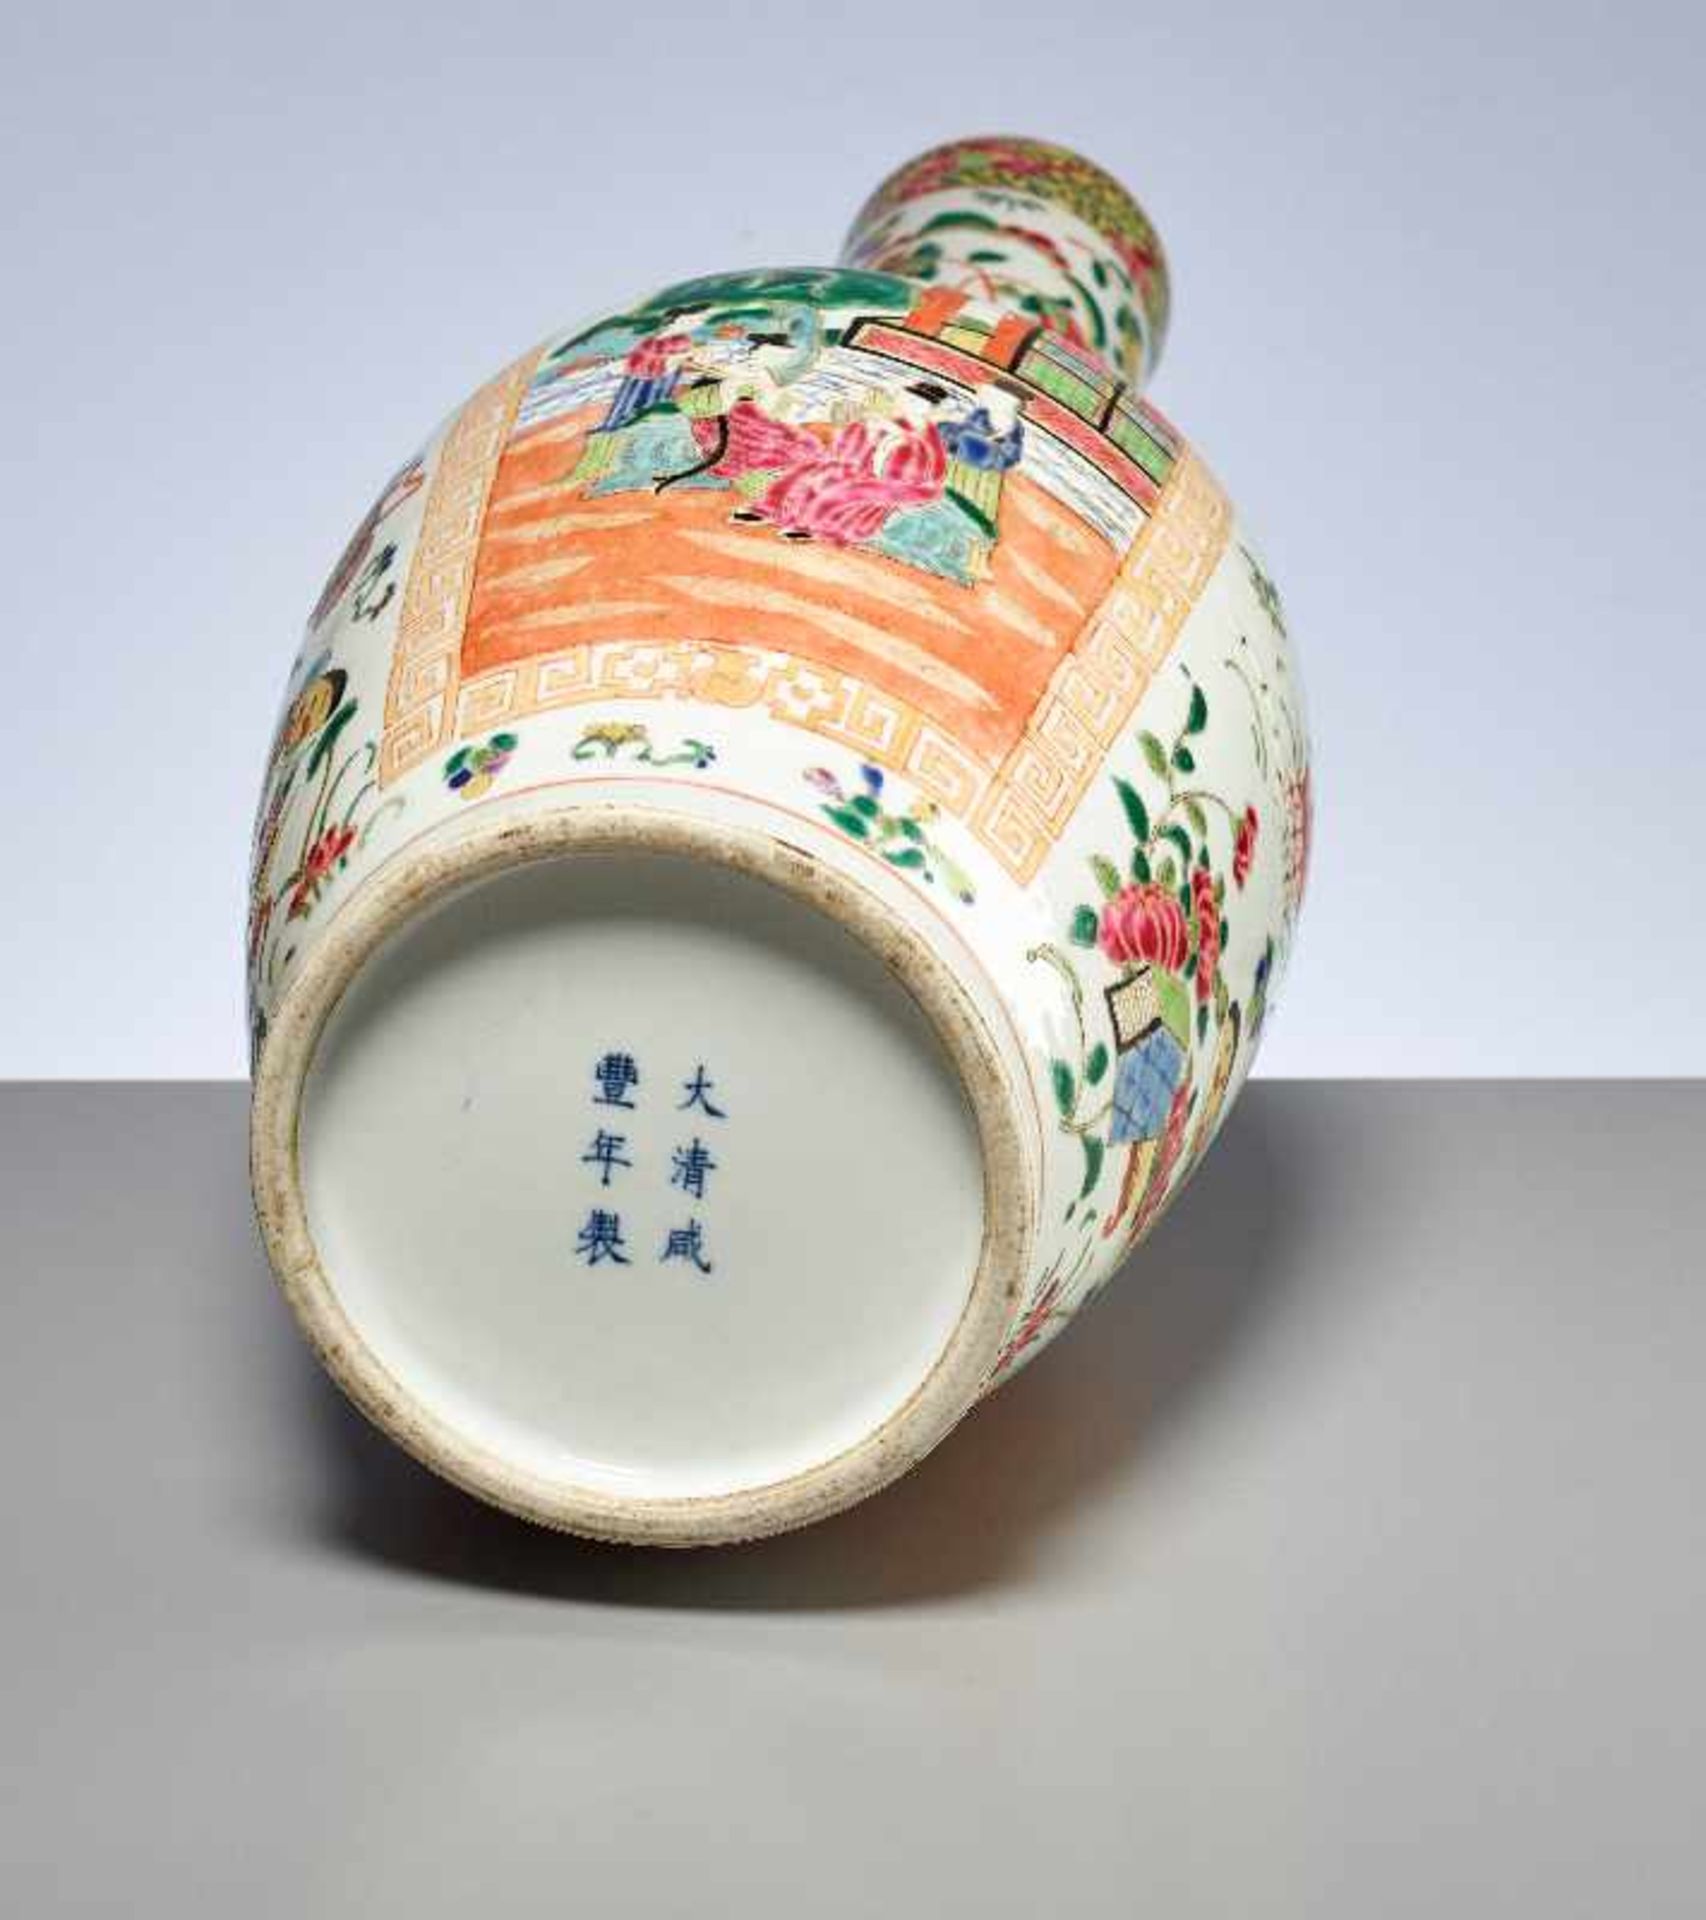 PAAR VASEN MIT HÖFISCHEN SZENENPorzellan mit Emailfarben. China, im Stil der Qing-Dynastie, - Image 5 of 15